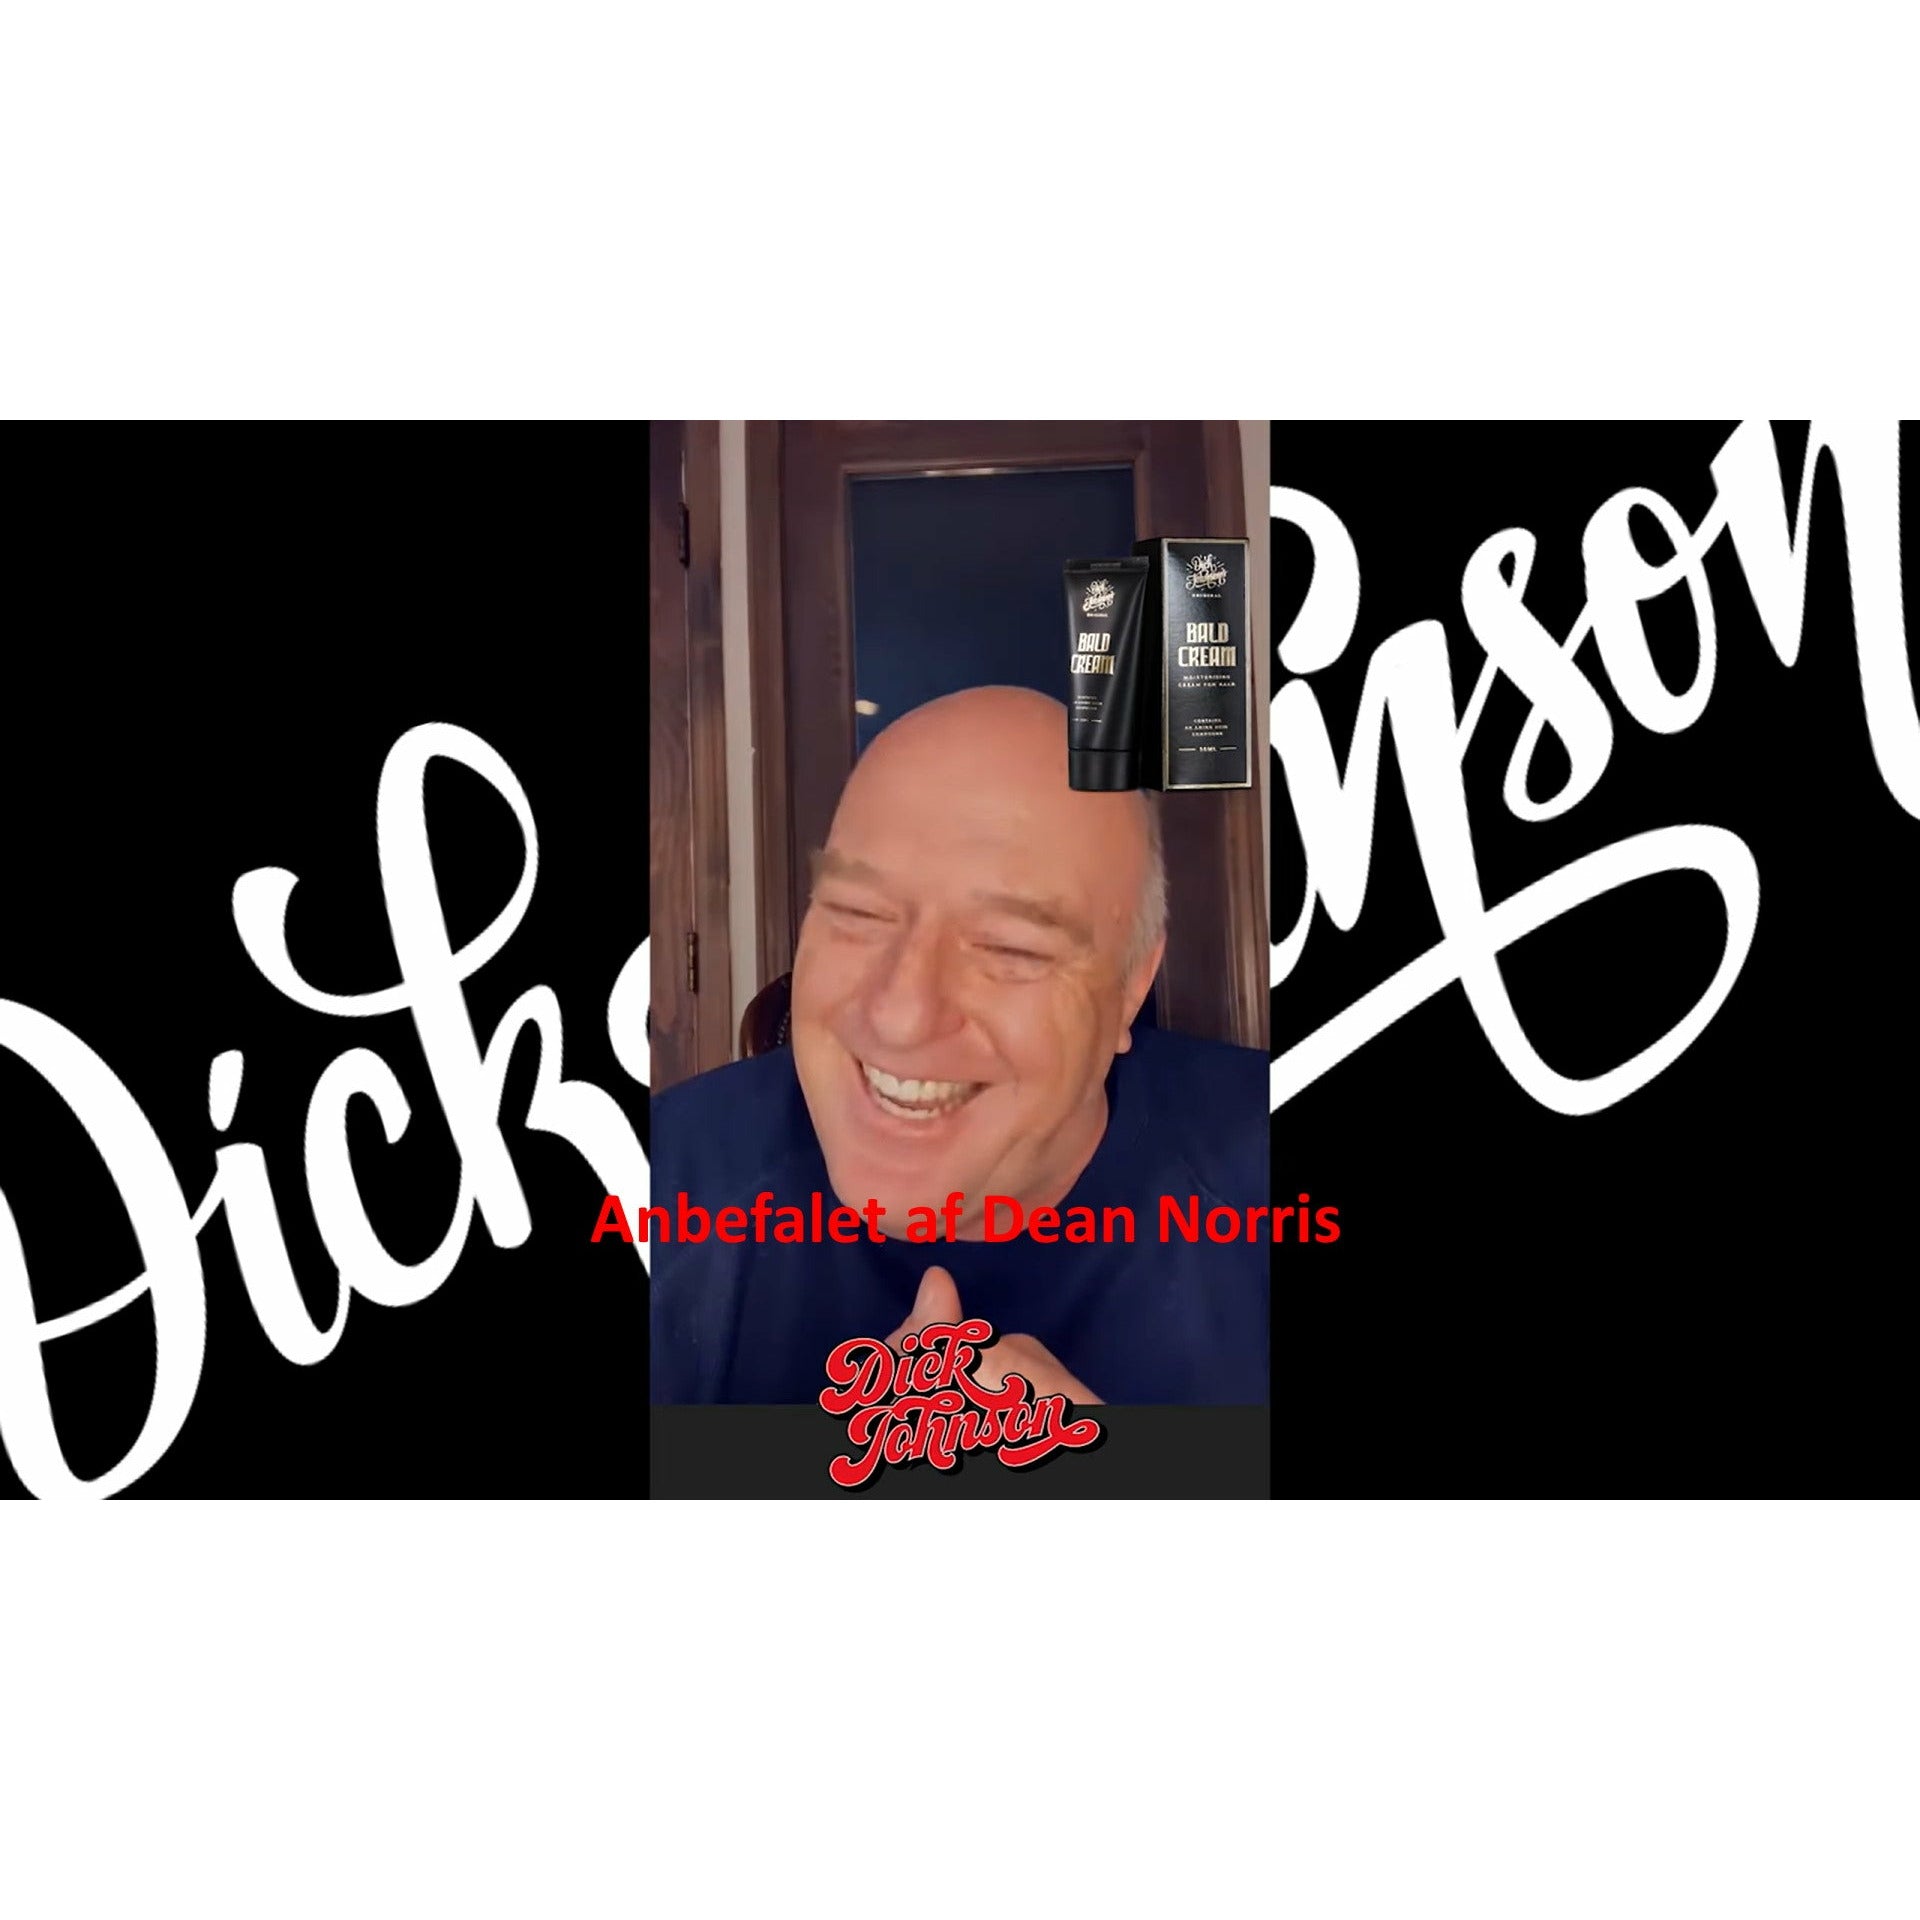 Dick Johnsons Bald Cream - Godkendt af Dean Norris fra Breaking Bad & Better call Saul - 50 ml - klunkevoks.dk